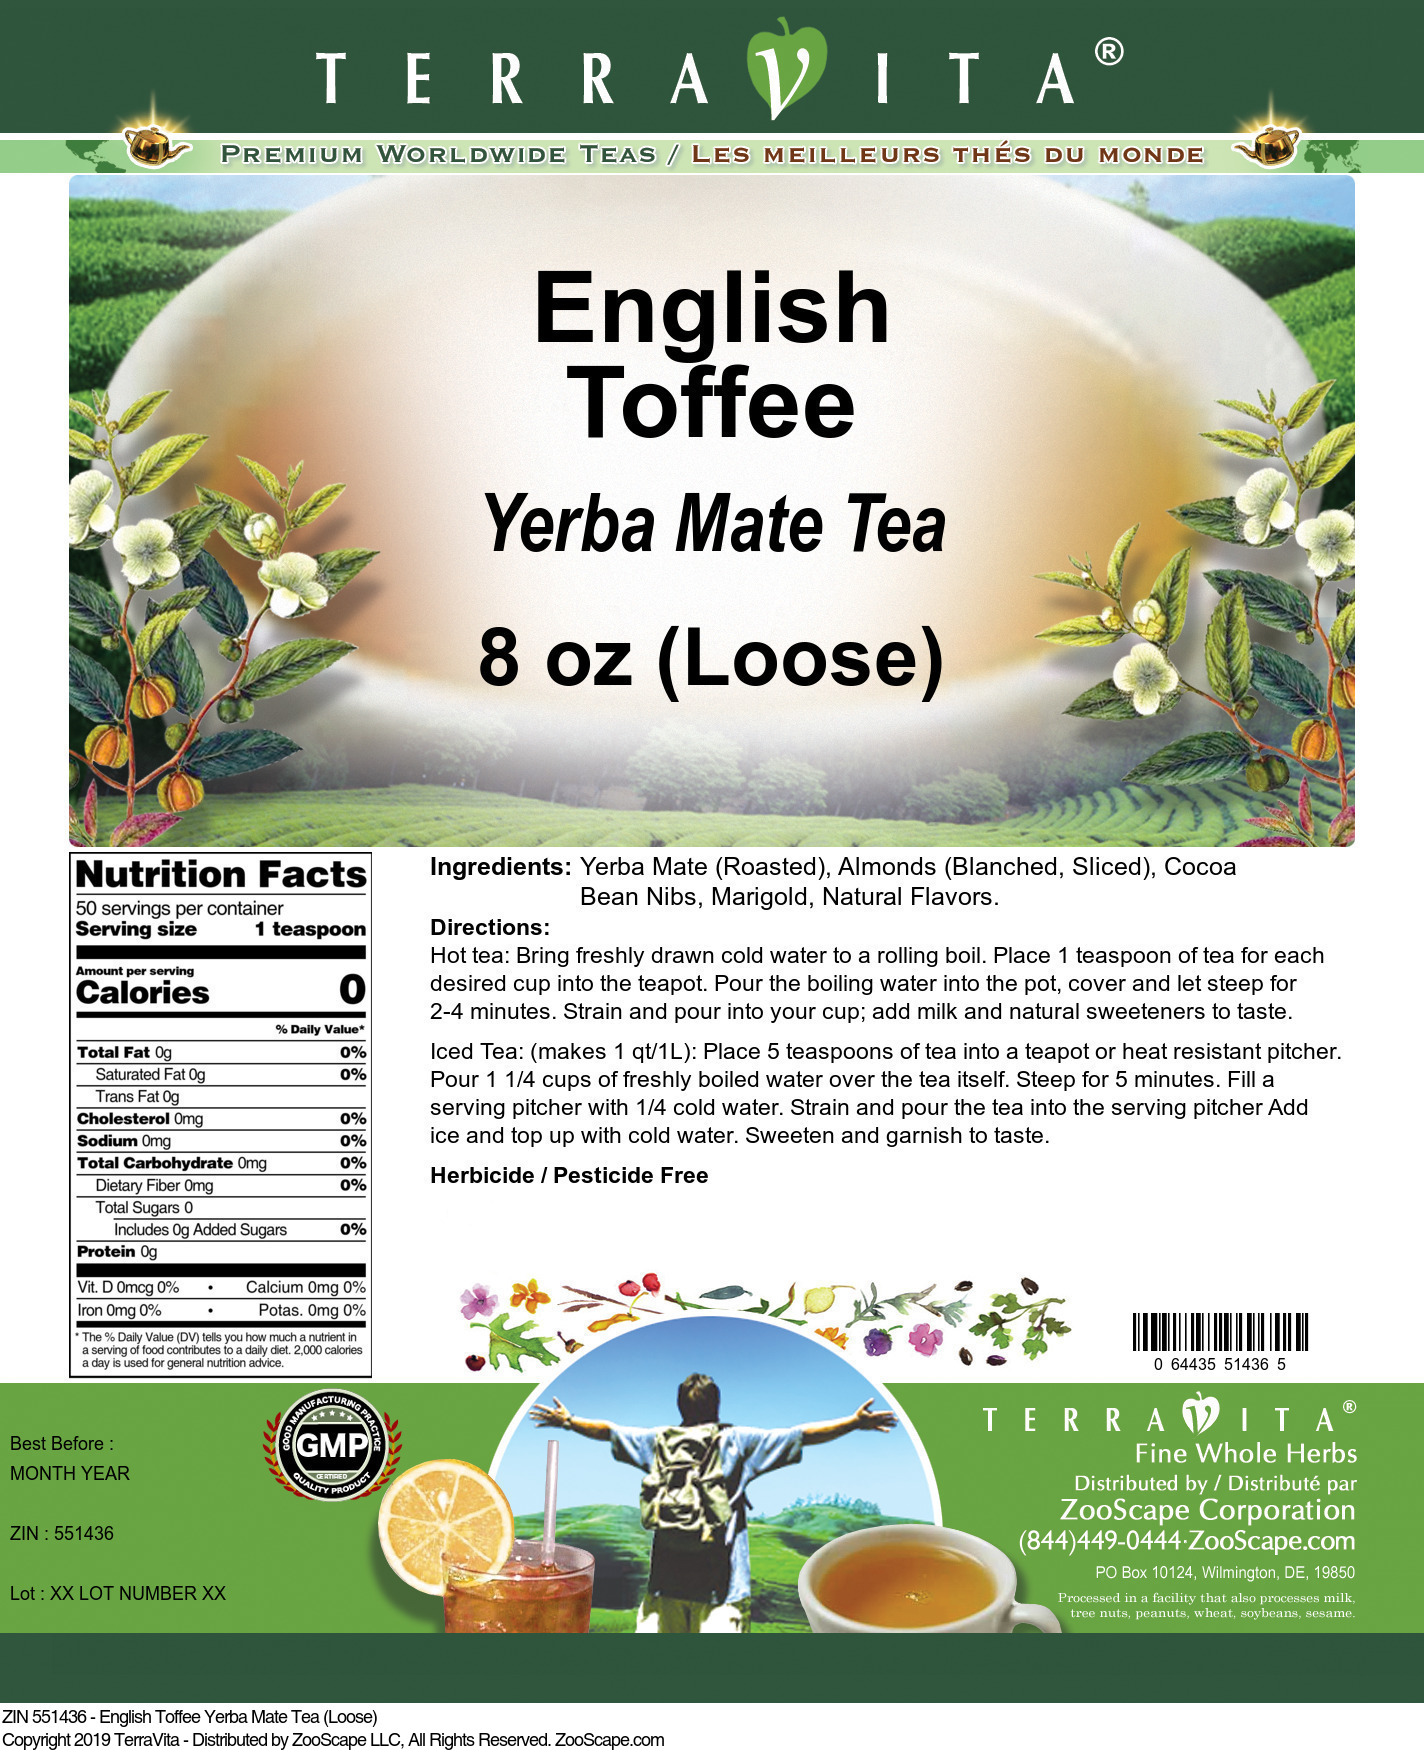 English Toffee Yerba Mate Tea (Loose) - Label